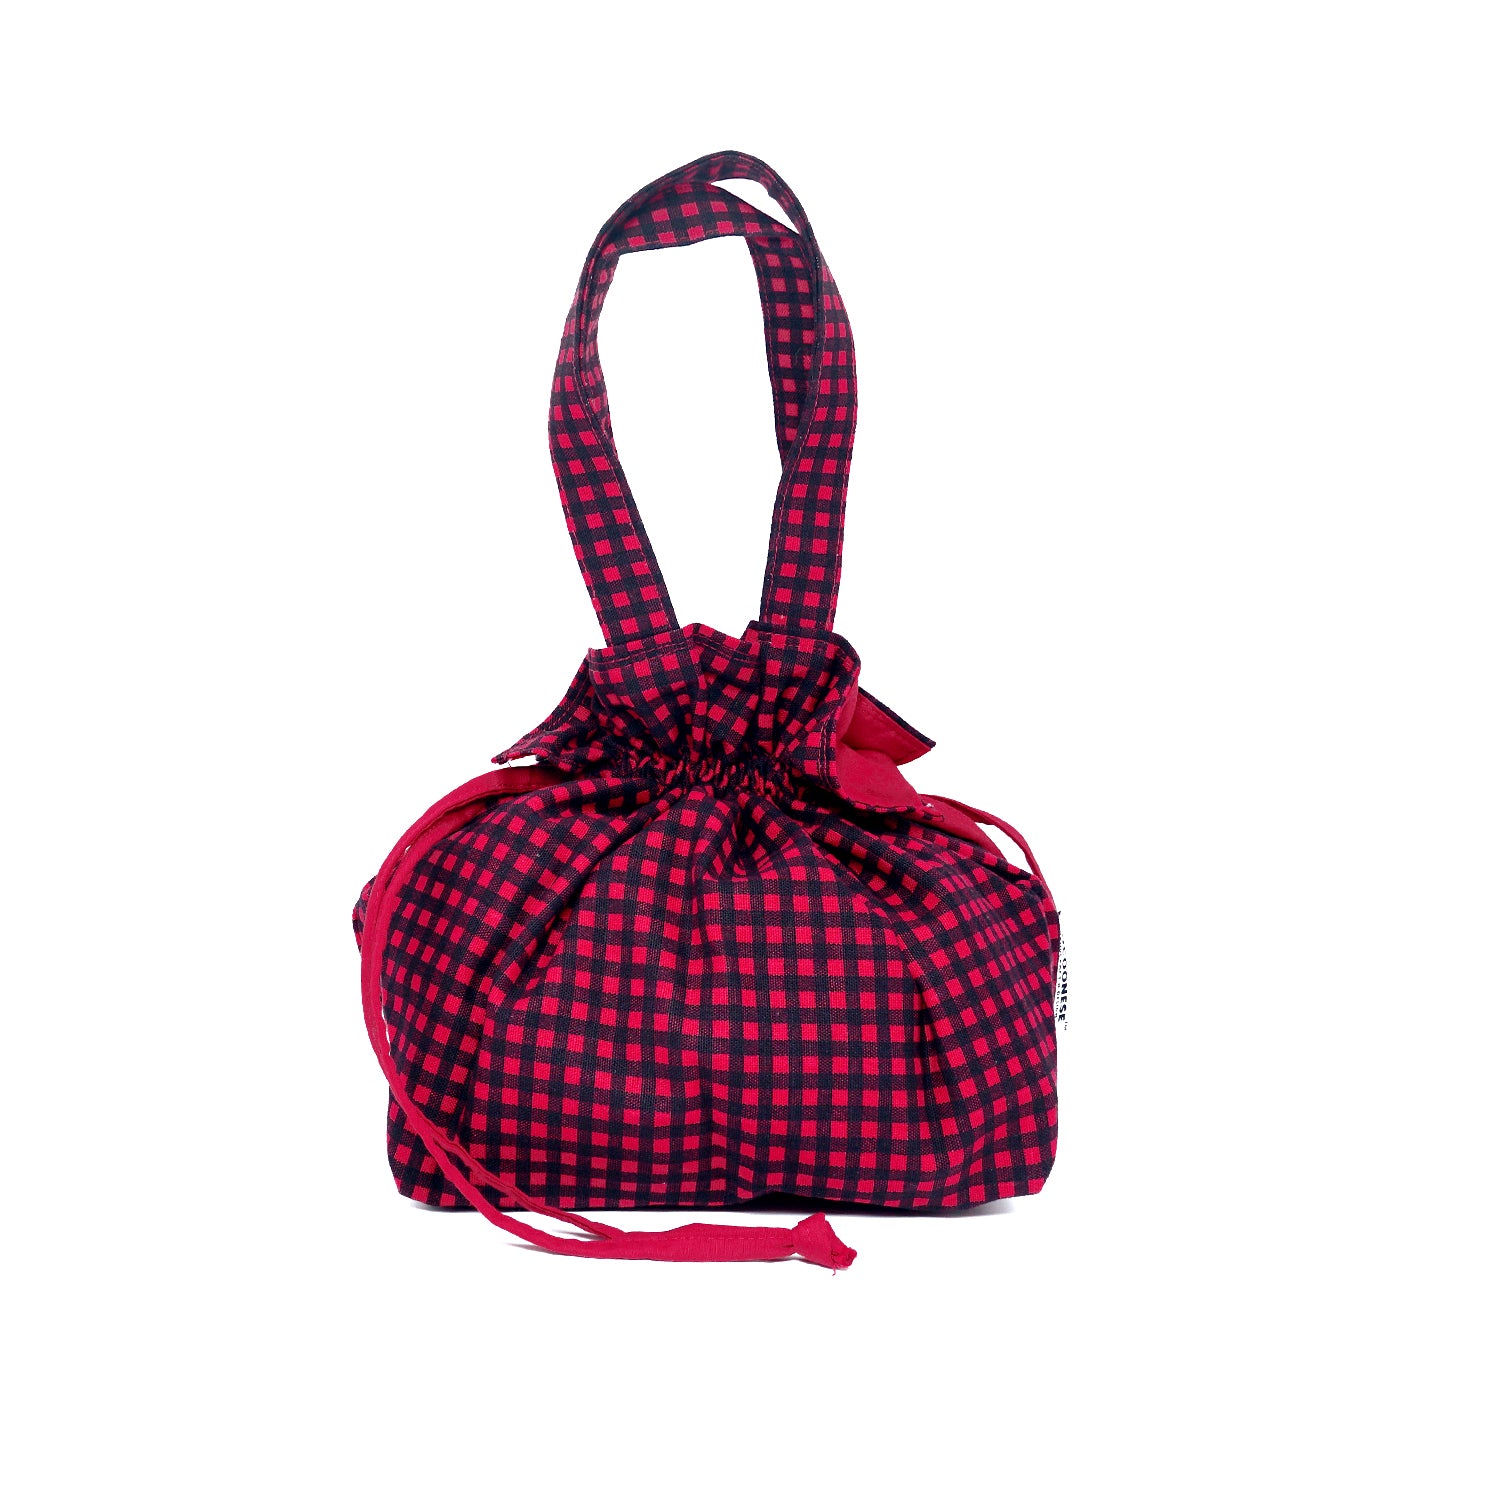 50% OFF - Drawstring Top Handle Handbag  - Red Check